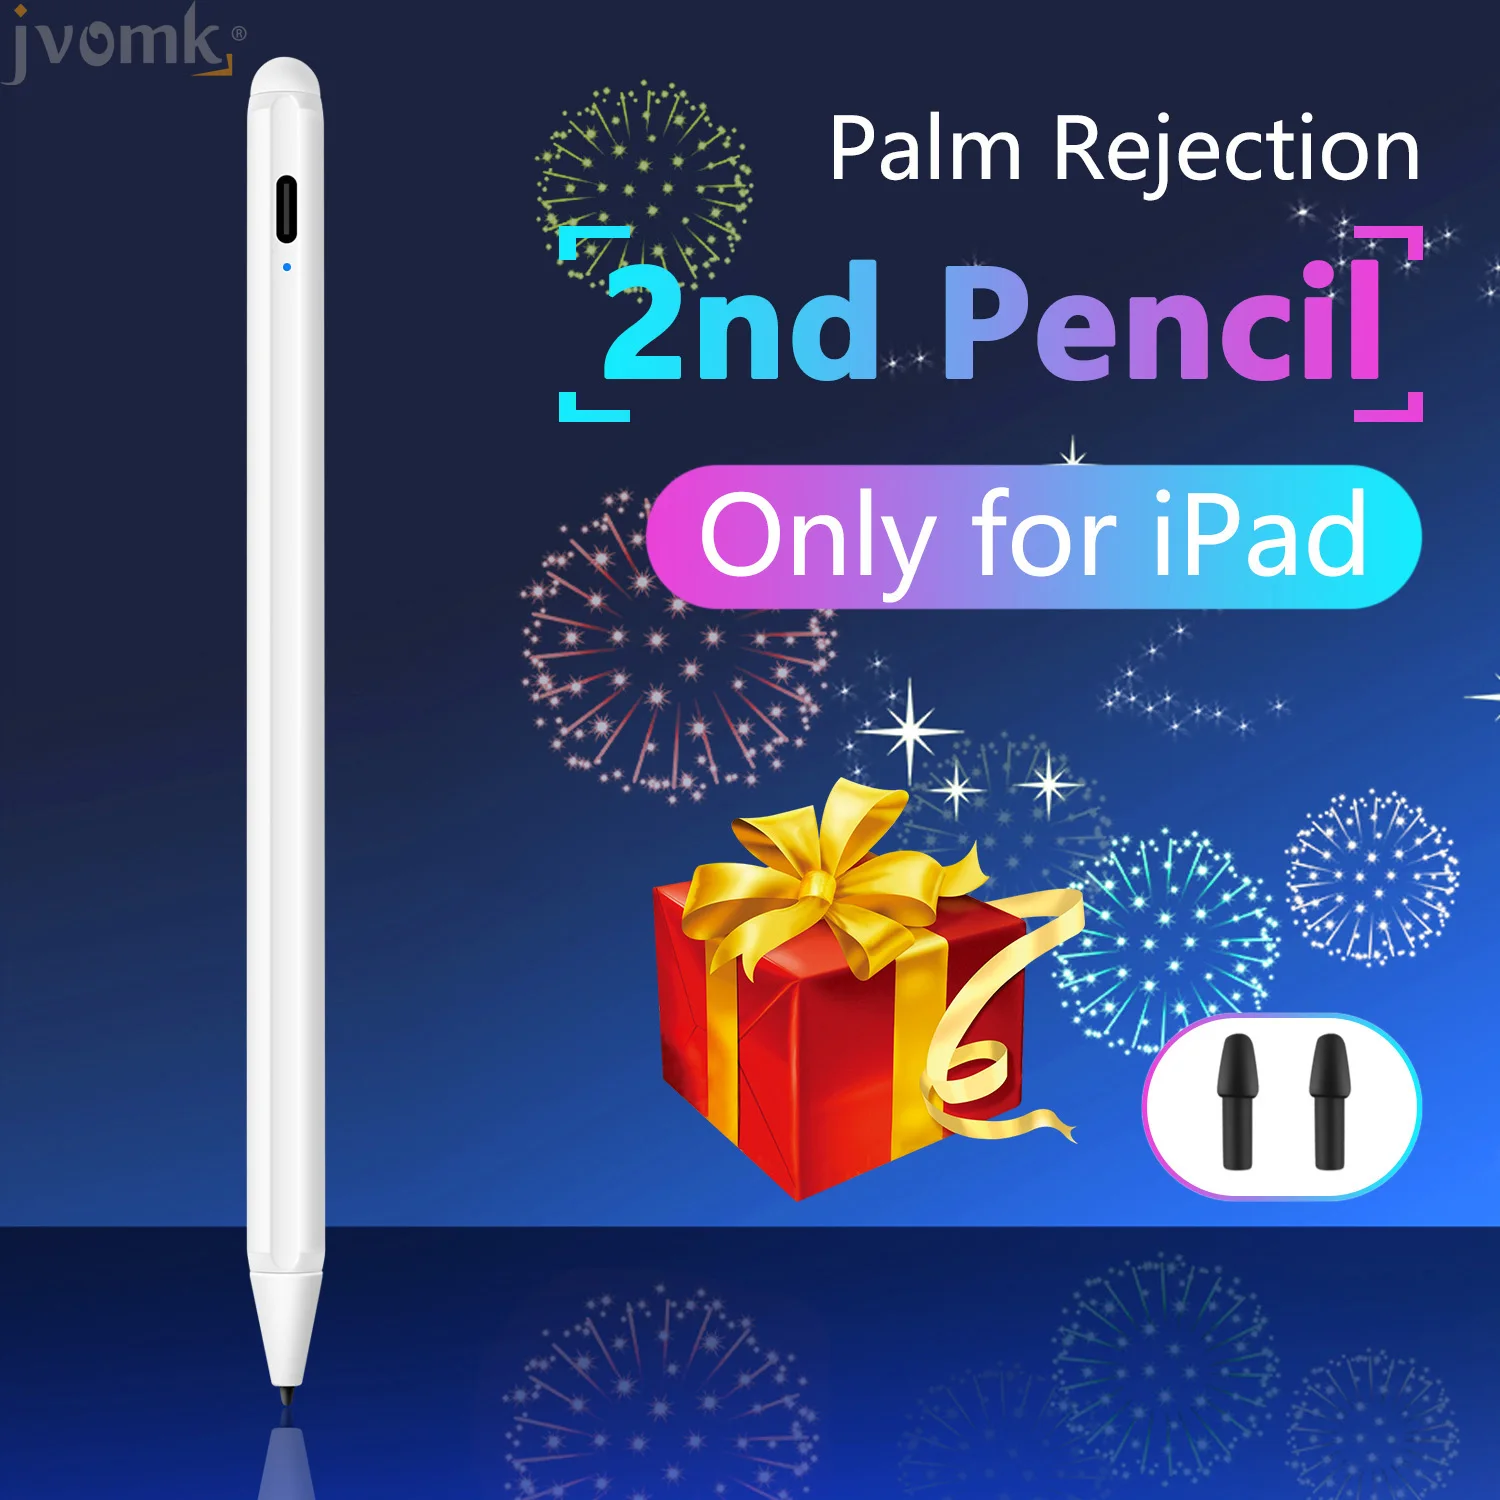 Pre Apple Ceruzka 2 Dotykové Pero Stylus Pen pre 2019 iPad Pro 12.9 11 palcový 10.2 / 2018 6. 9.7 / Vzduch 3 / Mini 5 s Palm Odmietnutie